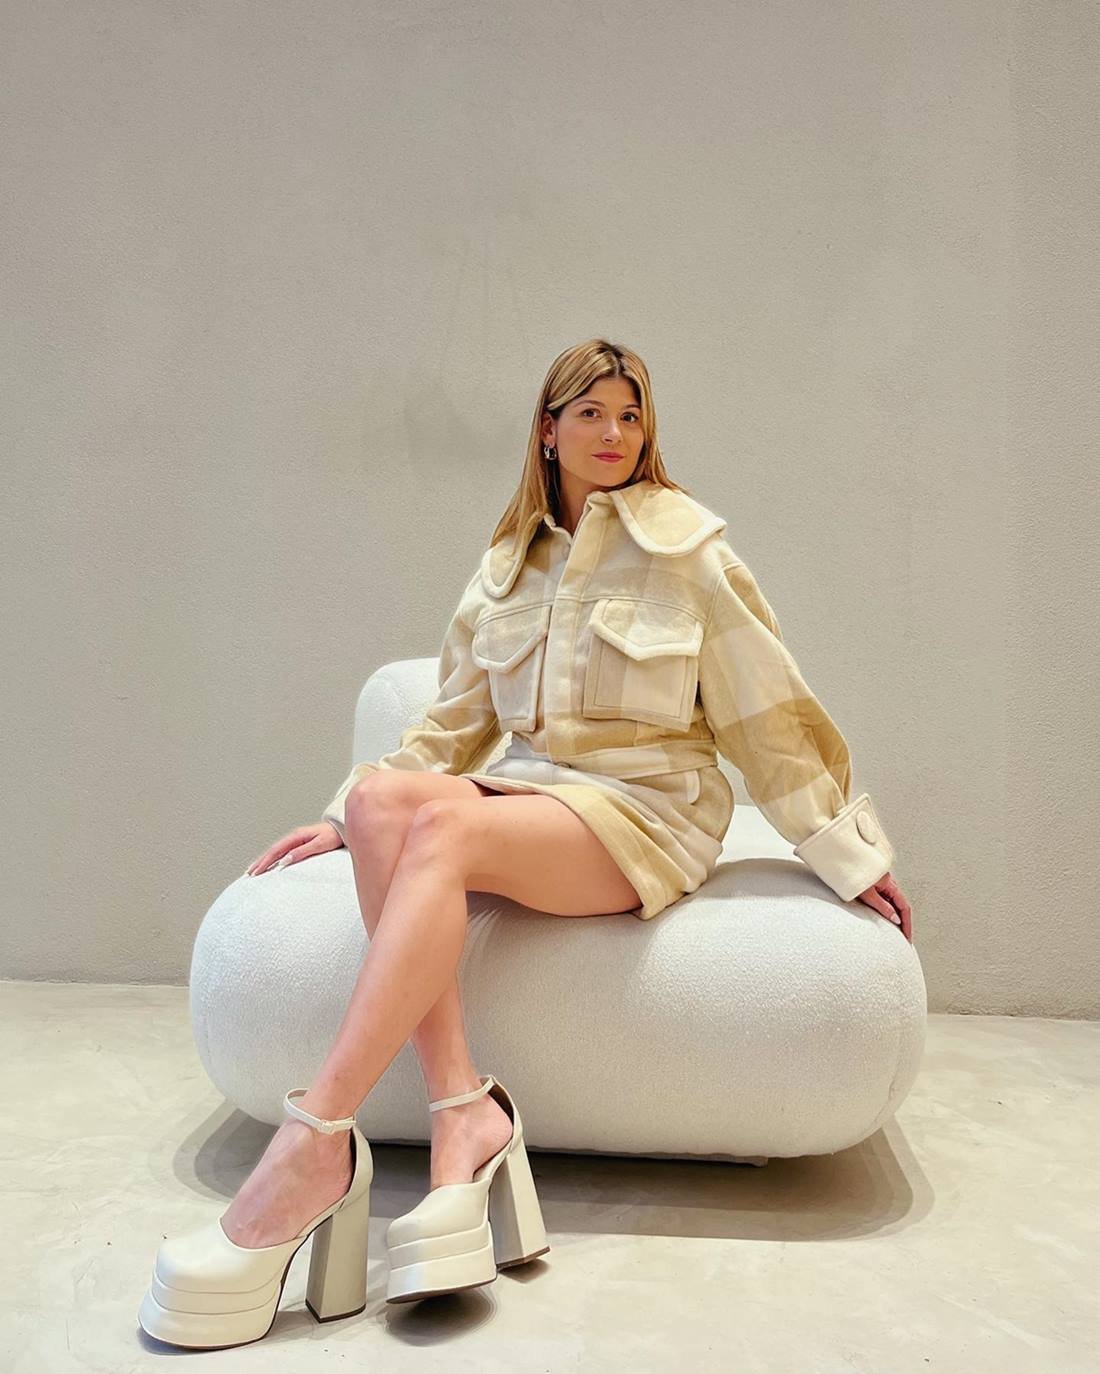 A jornalista Giovana Romani, uma mulher branca, jovem e com cabelo liso loiro, posando para foto em um sofá bege. Ela usa um conjunto de blusa e saia xadrez, em tons claros, e uma sandália plataforma branca